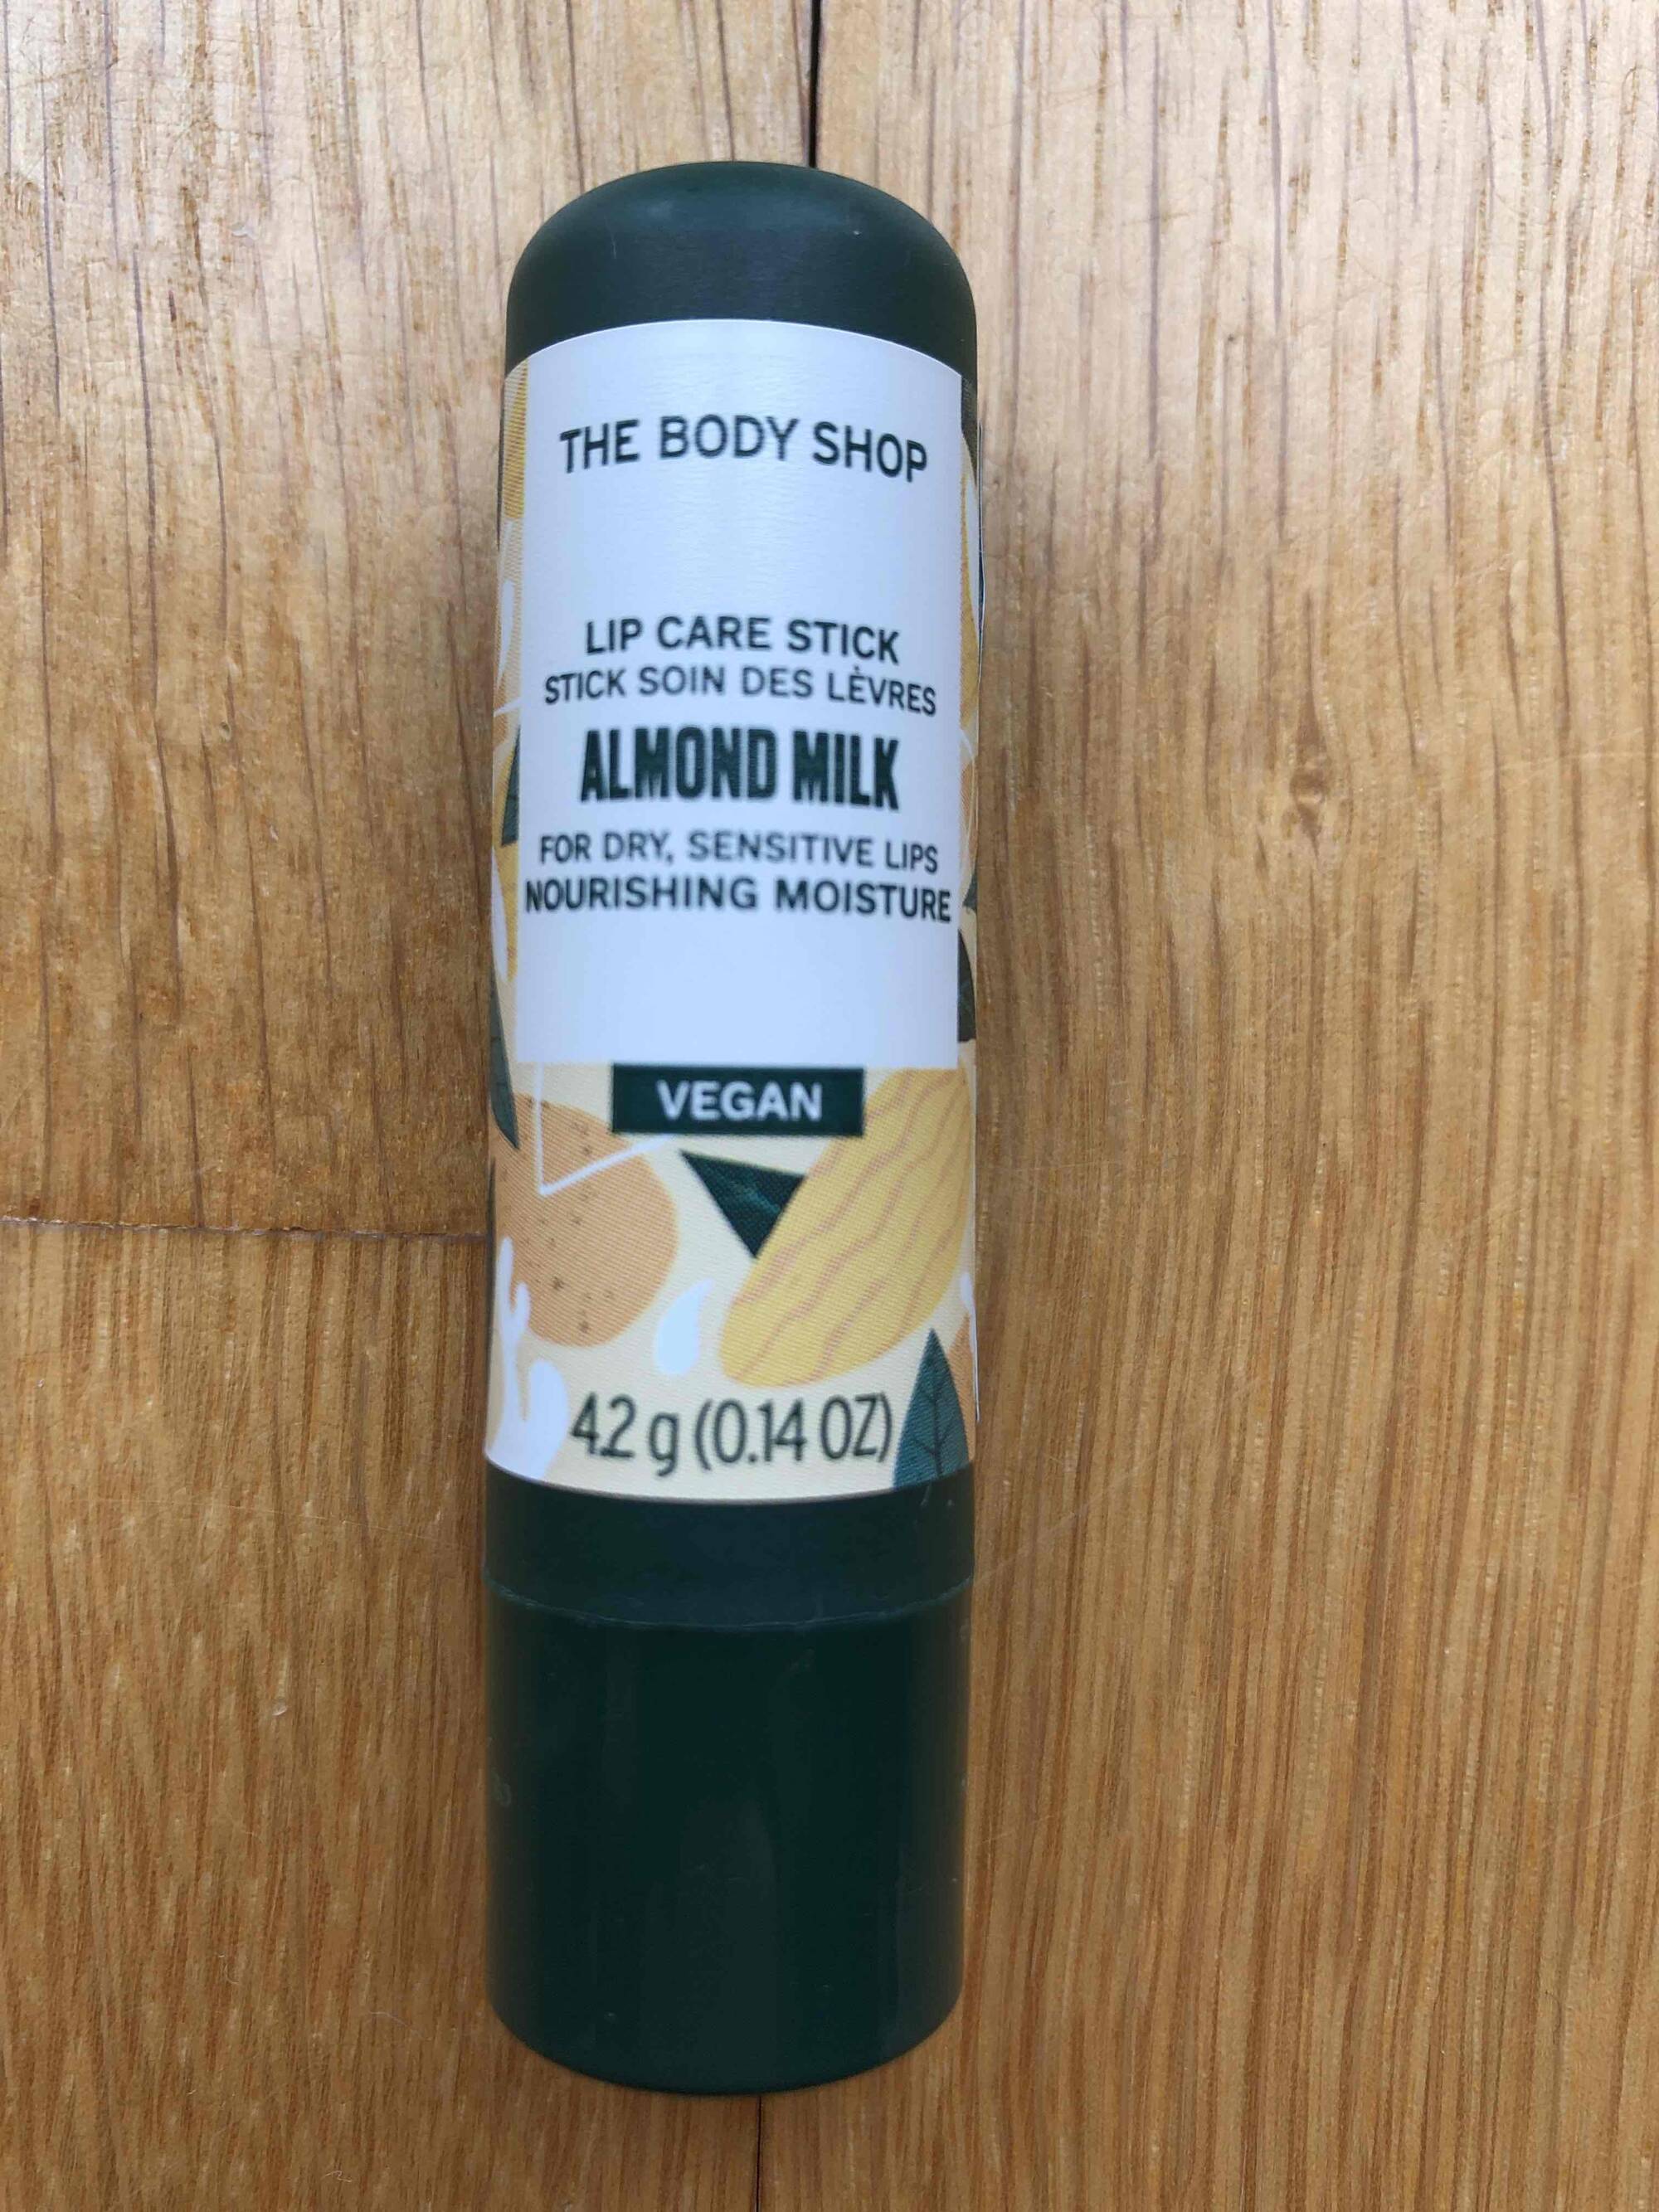 THE BODY SHOP - Almond milk - Stick soin des lèvres  